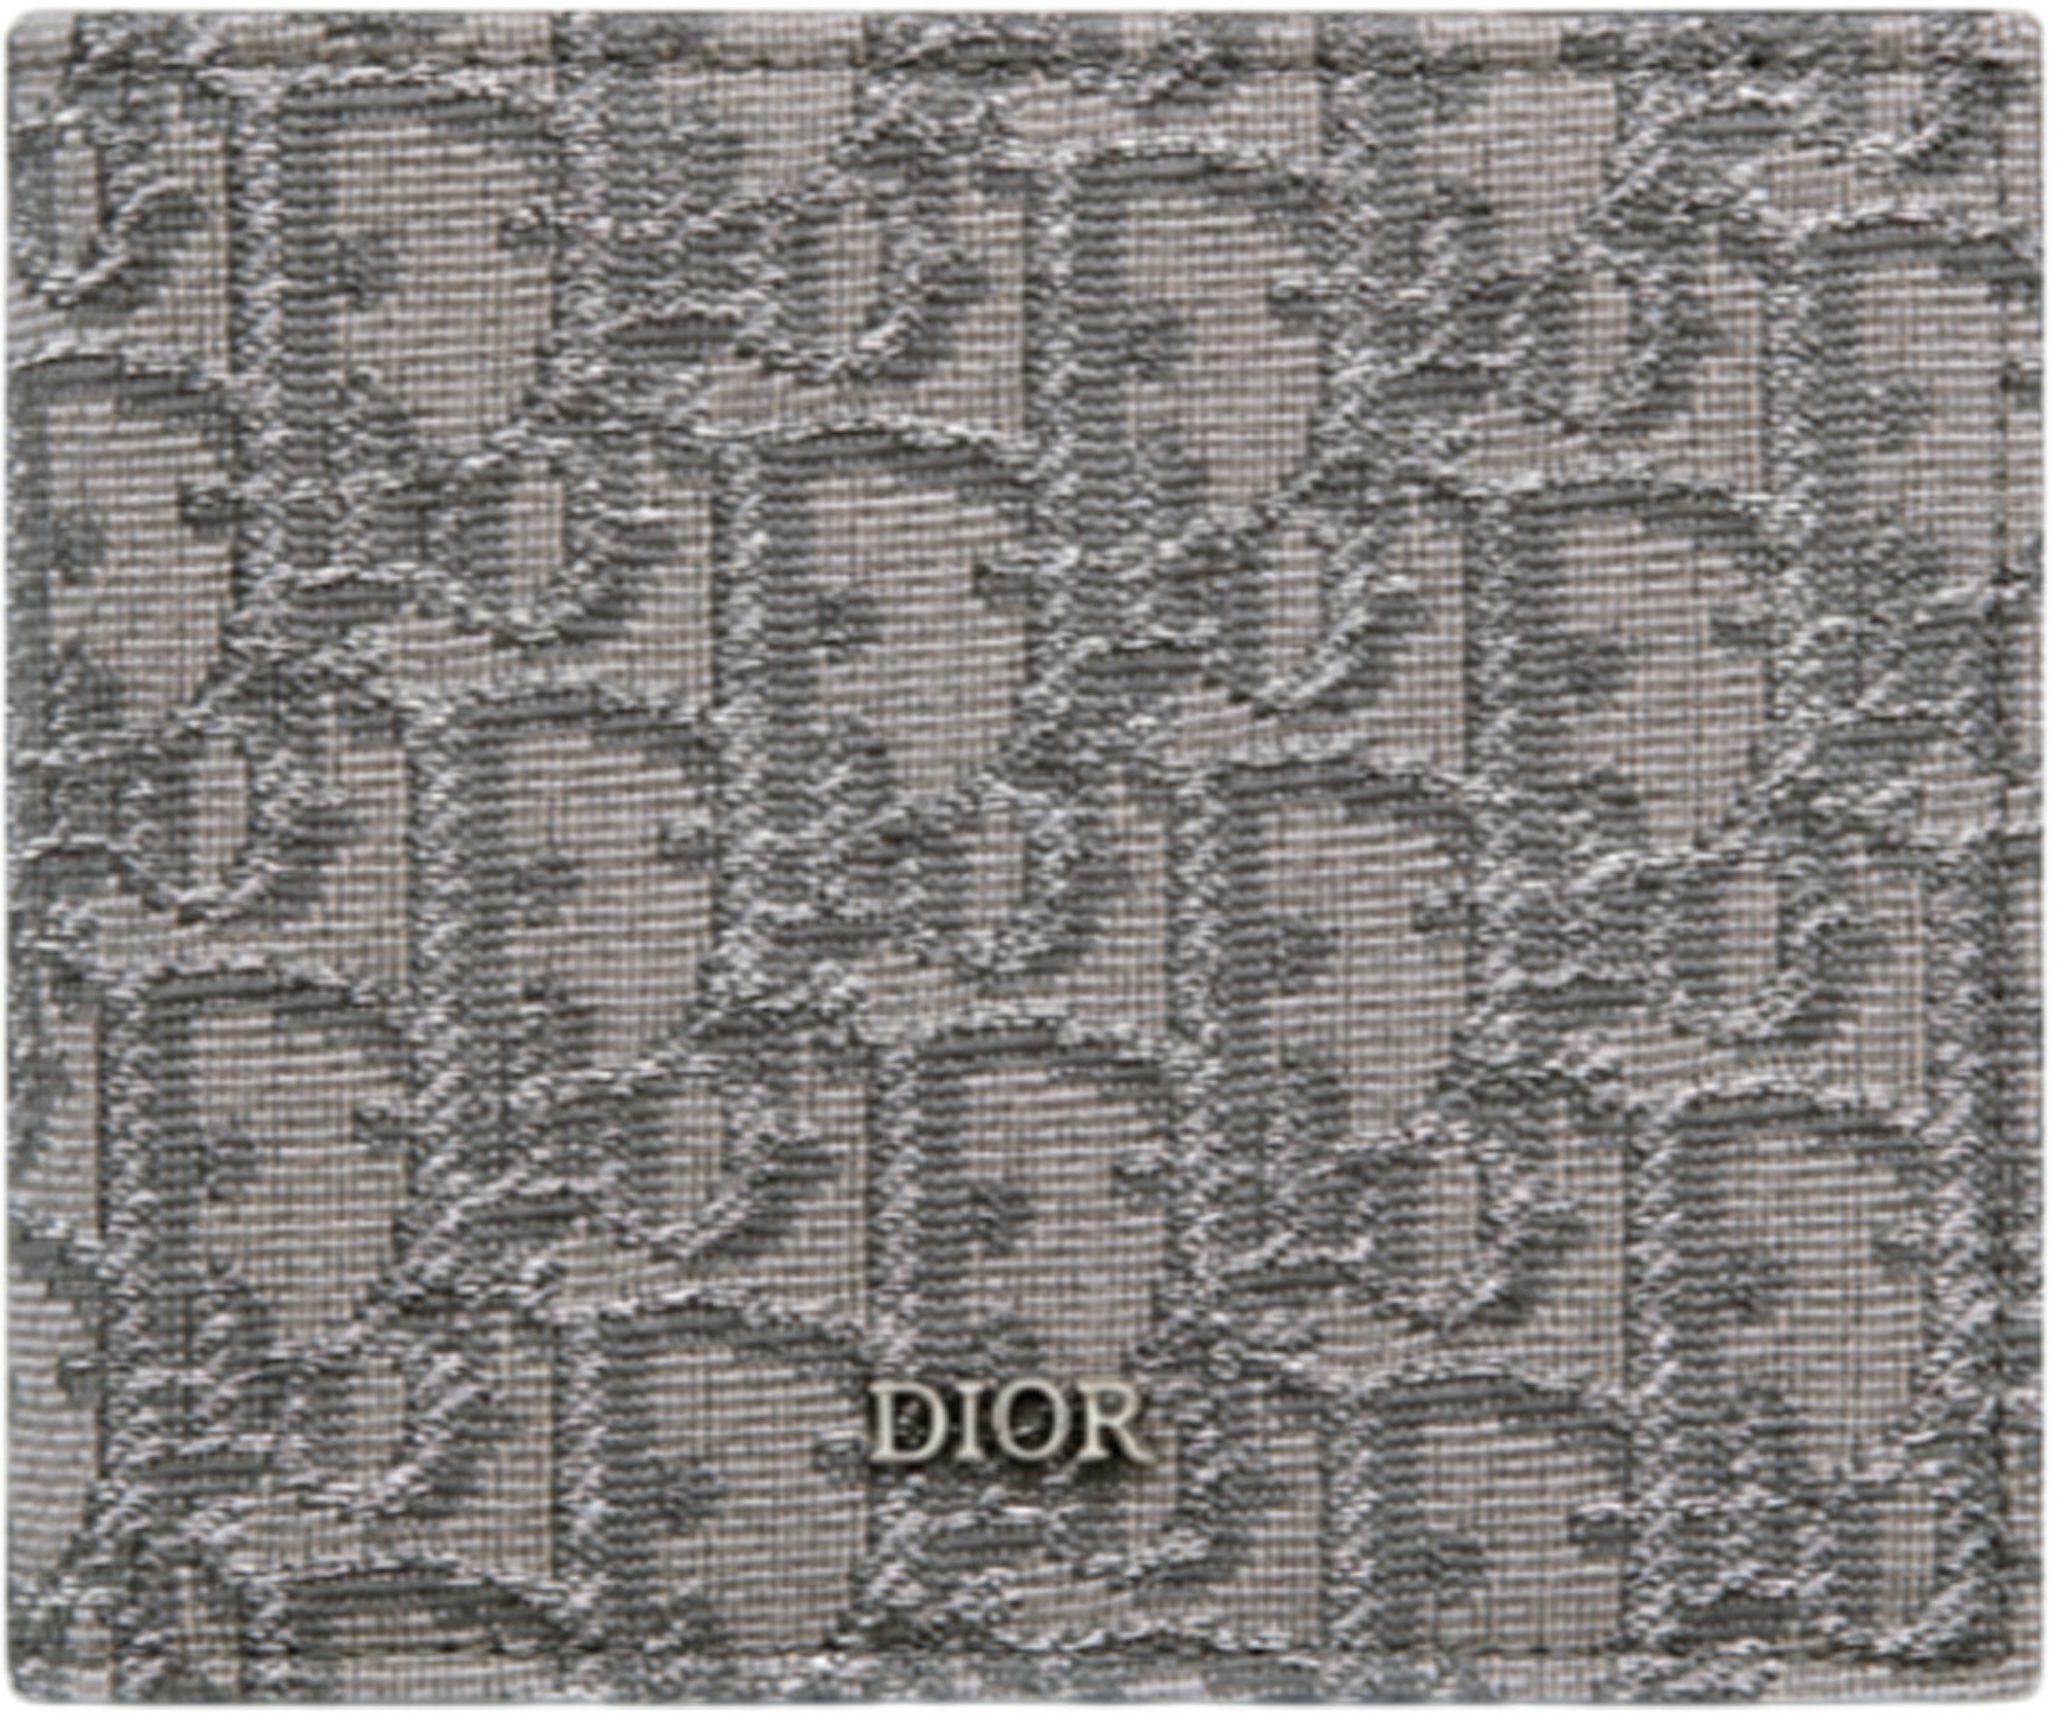 Long Bi-Fold Card Holder Beige and Black Dior Oblique Jacquard